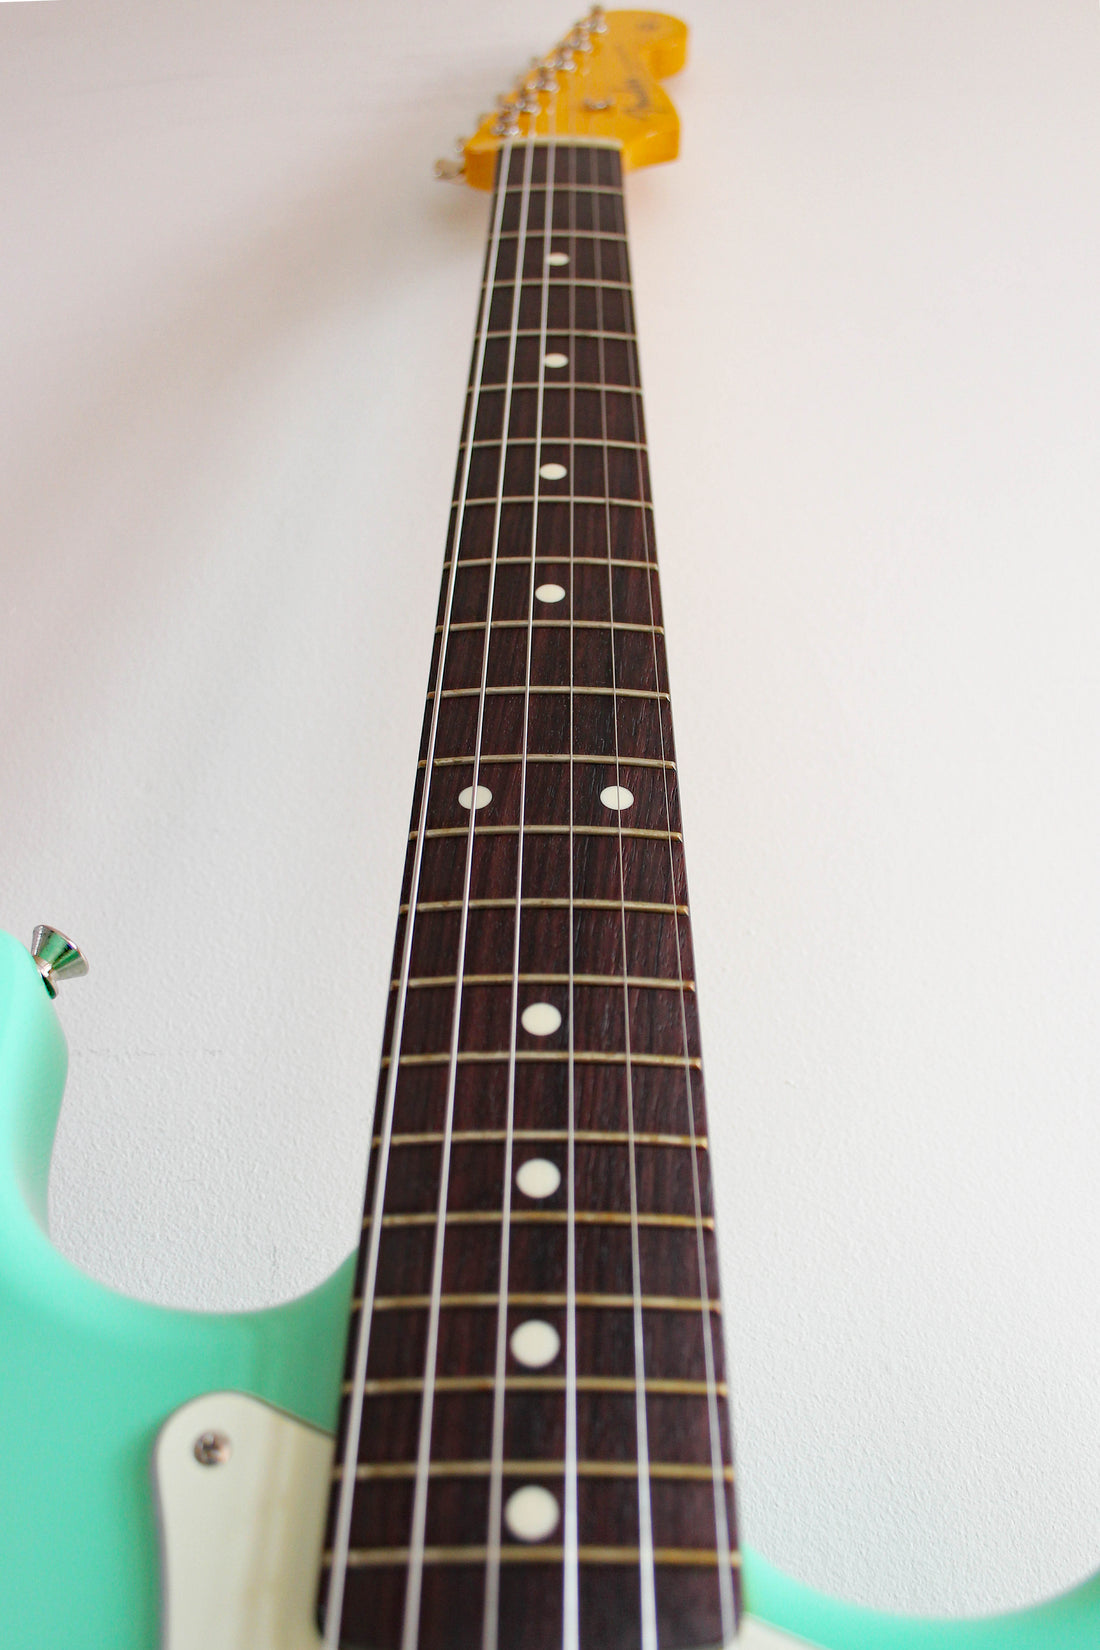 Used Fender Stratocaster '62 Reissue Surf Green 2016